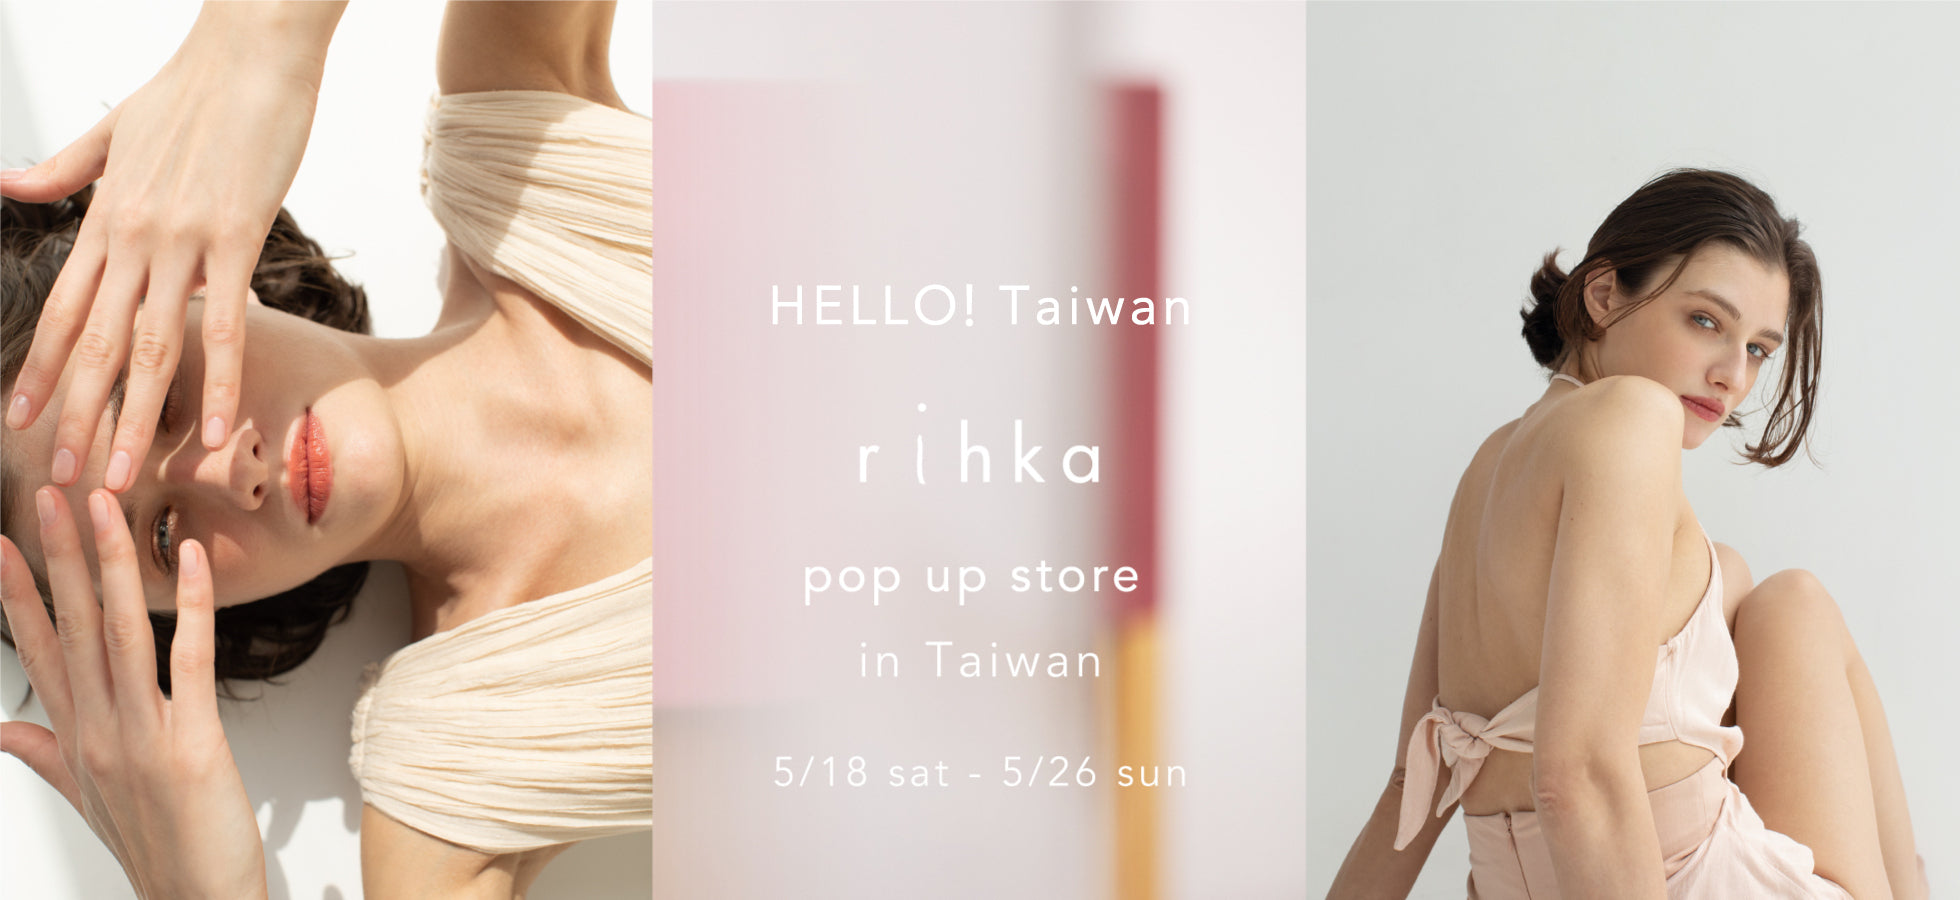 rihka pop-up store in Taiwan